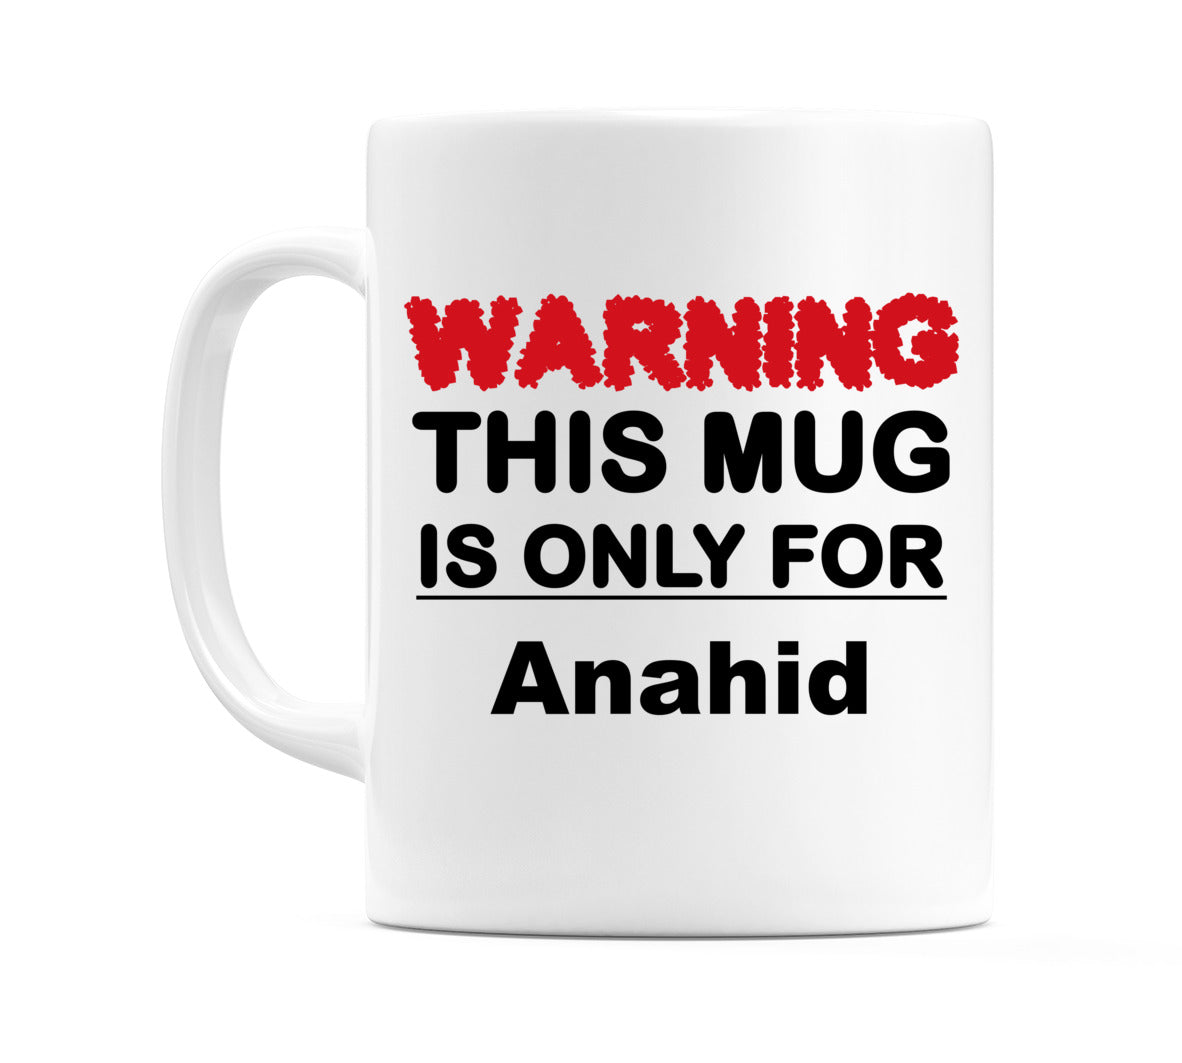 Warning This Mug is ONLY for Anahid Mug